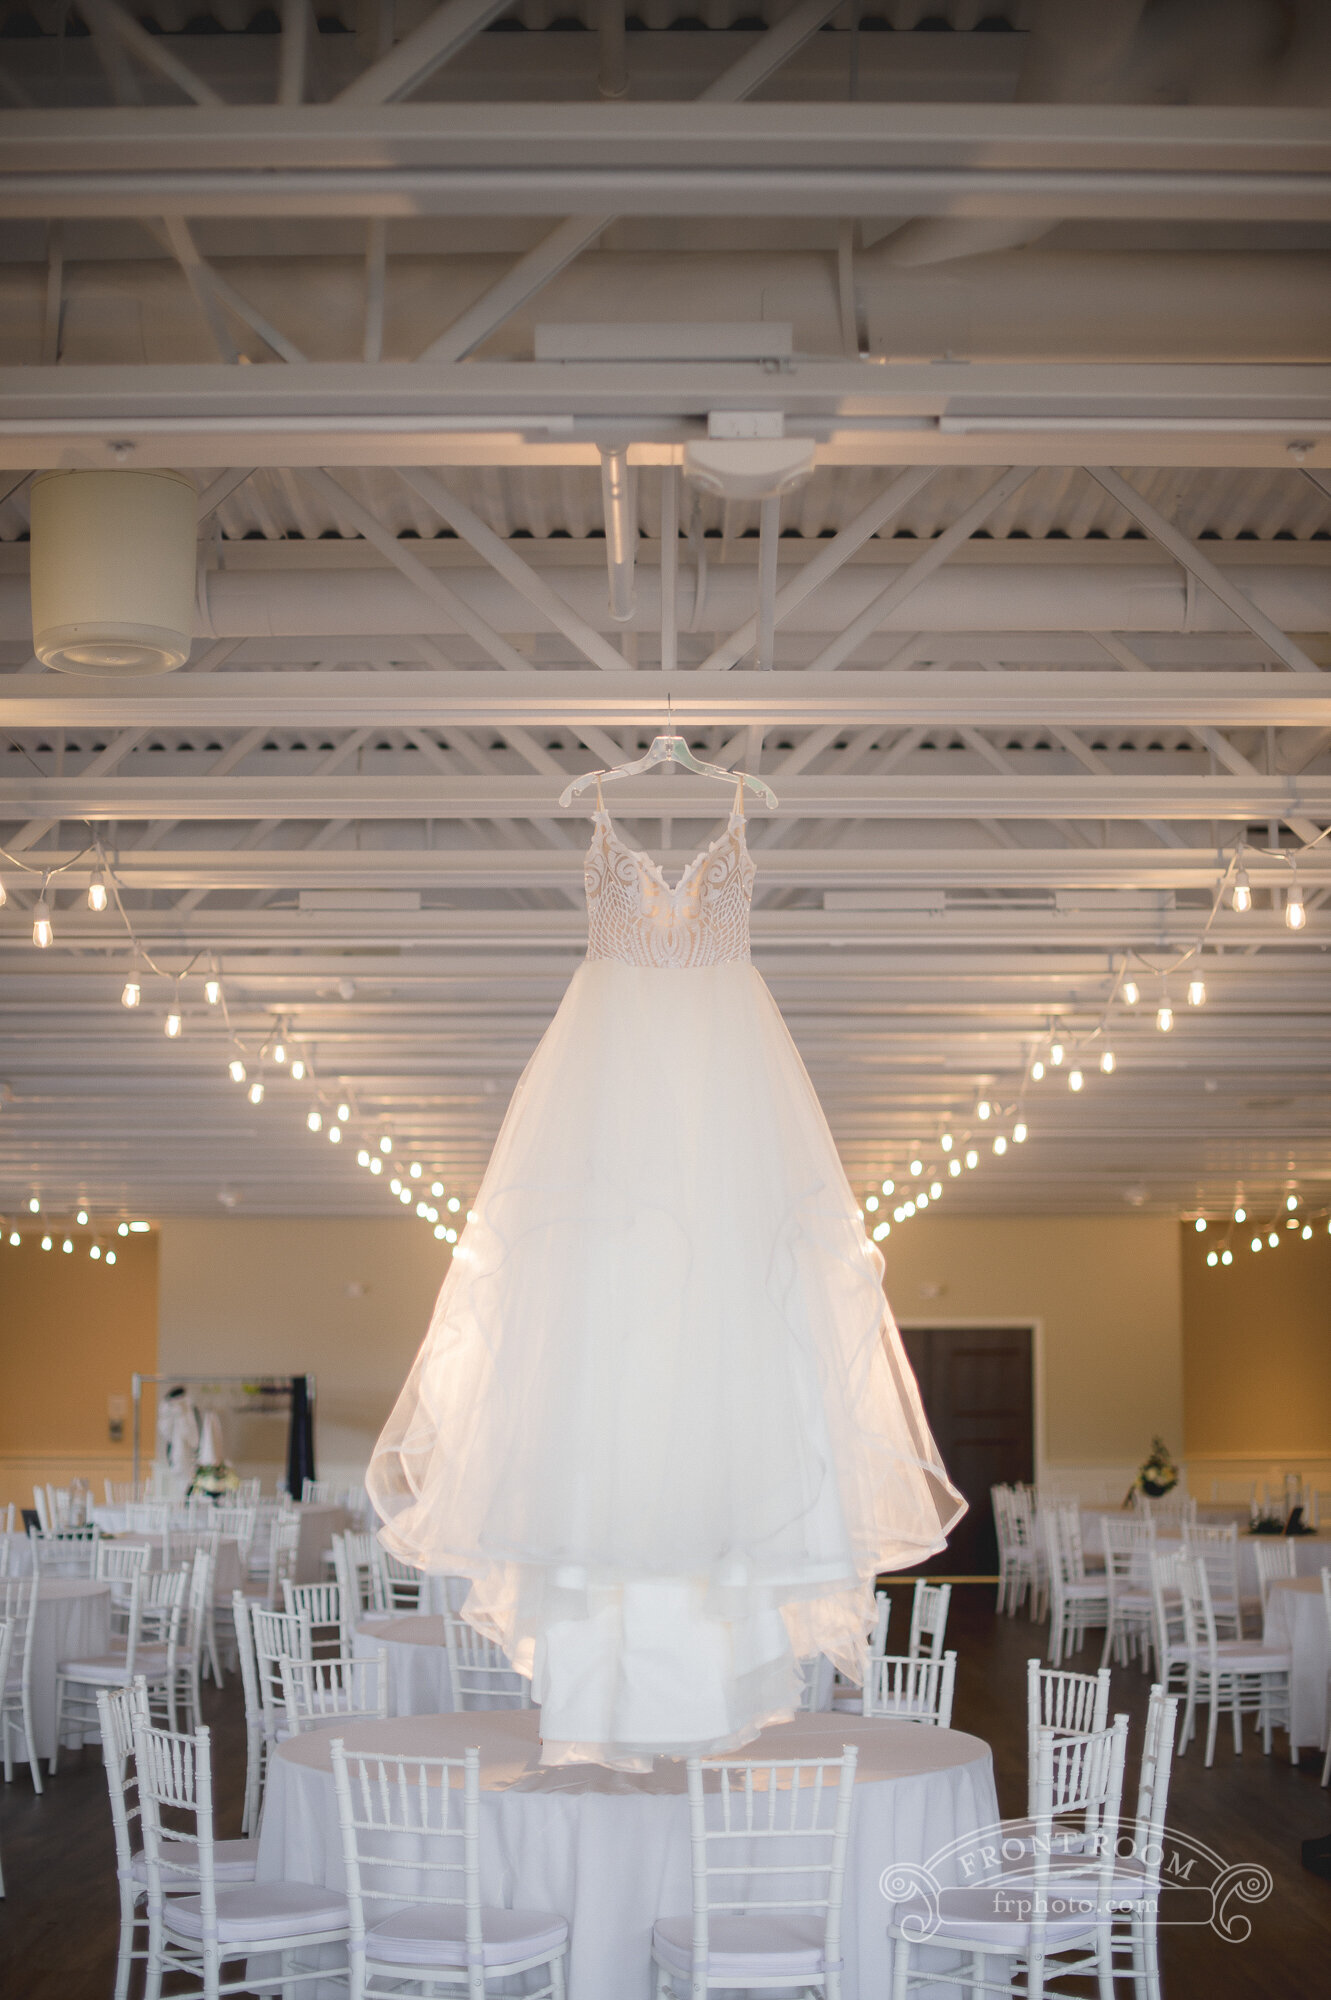 Wedding dress hung in a wedding venue